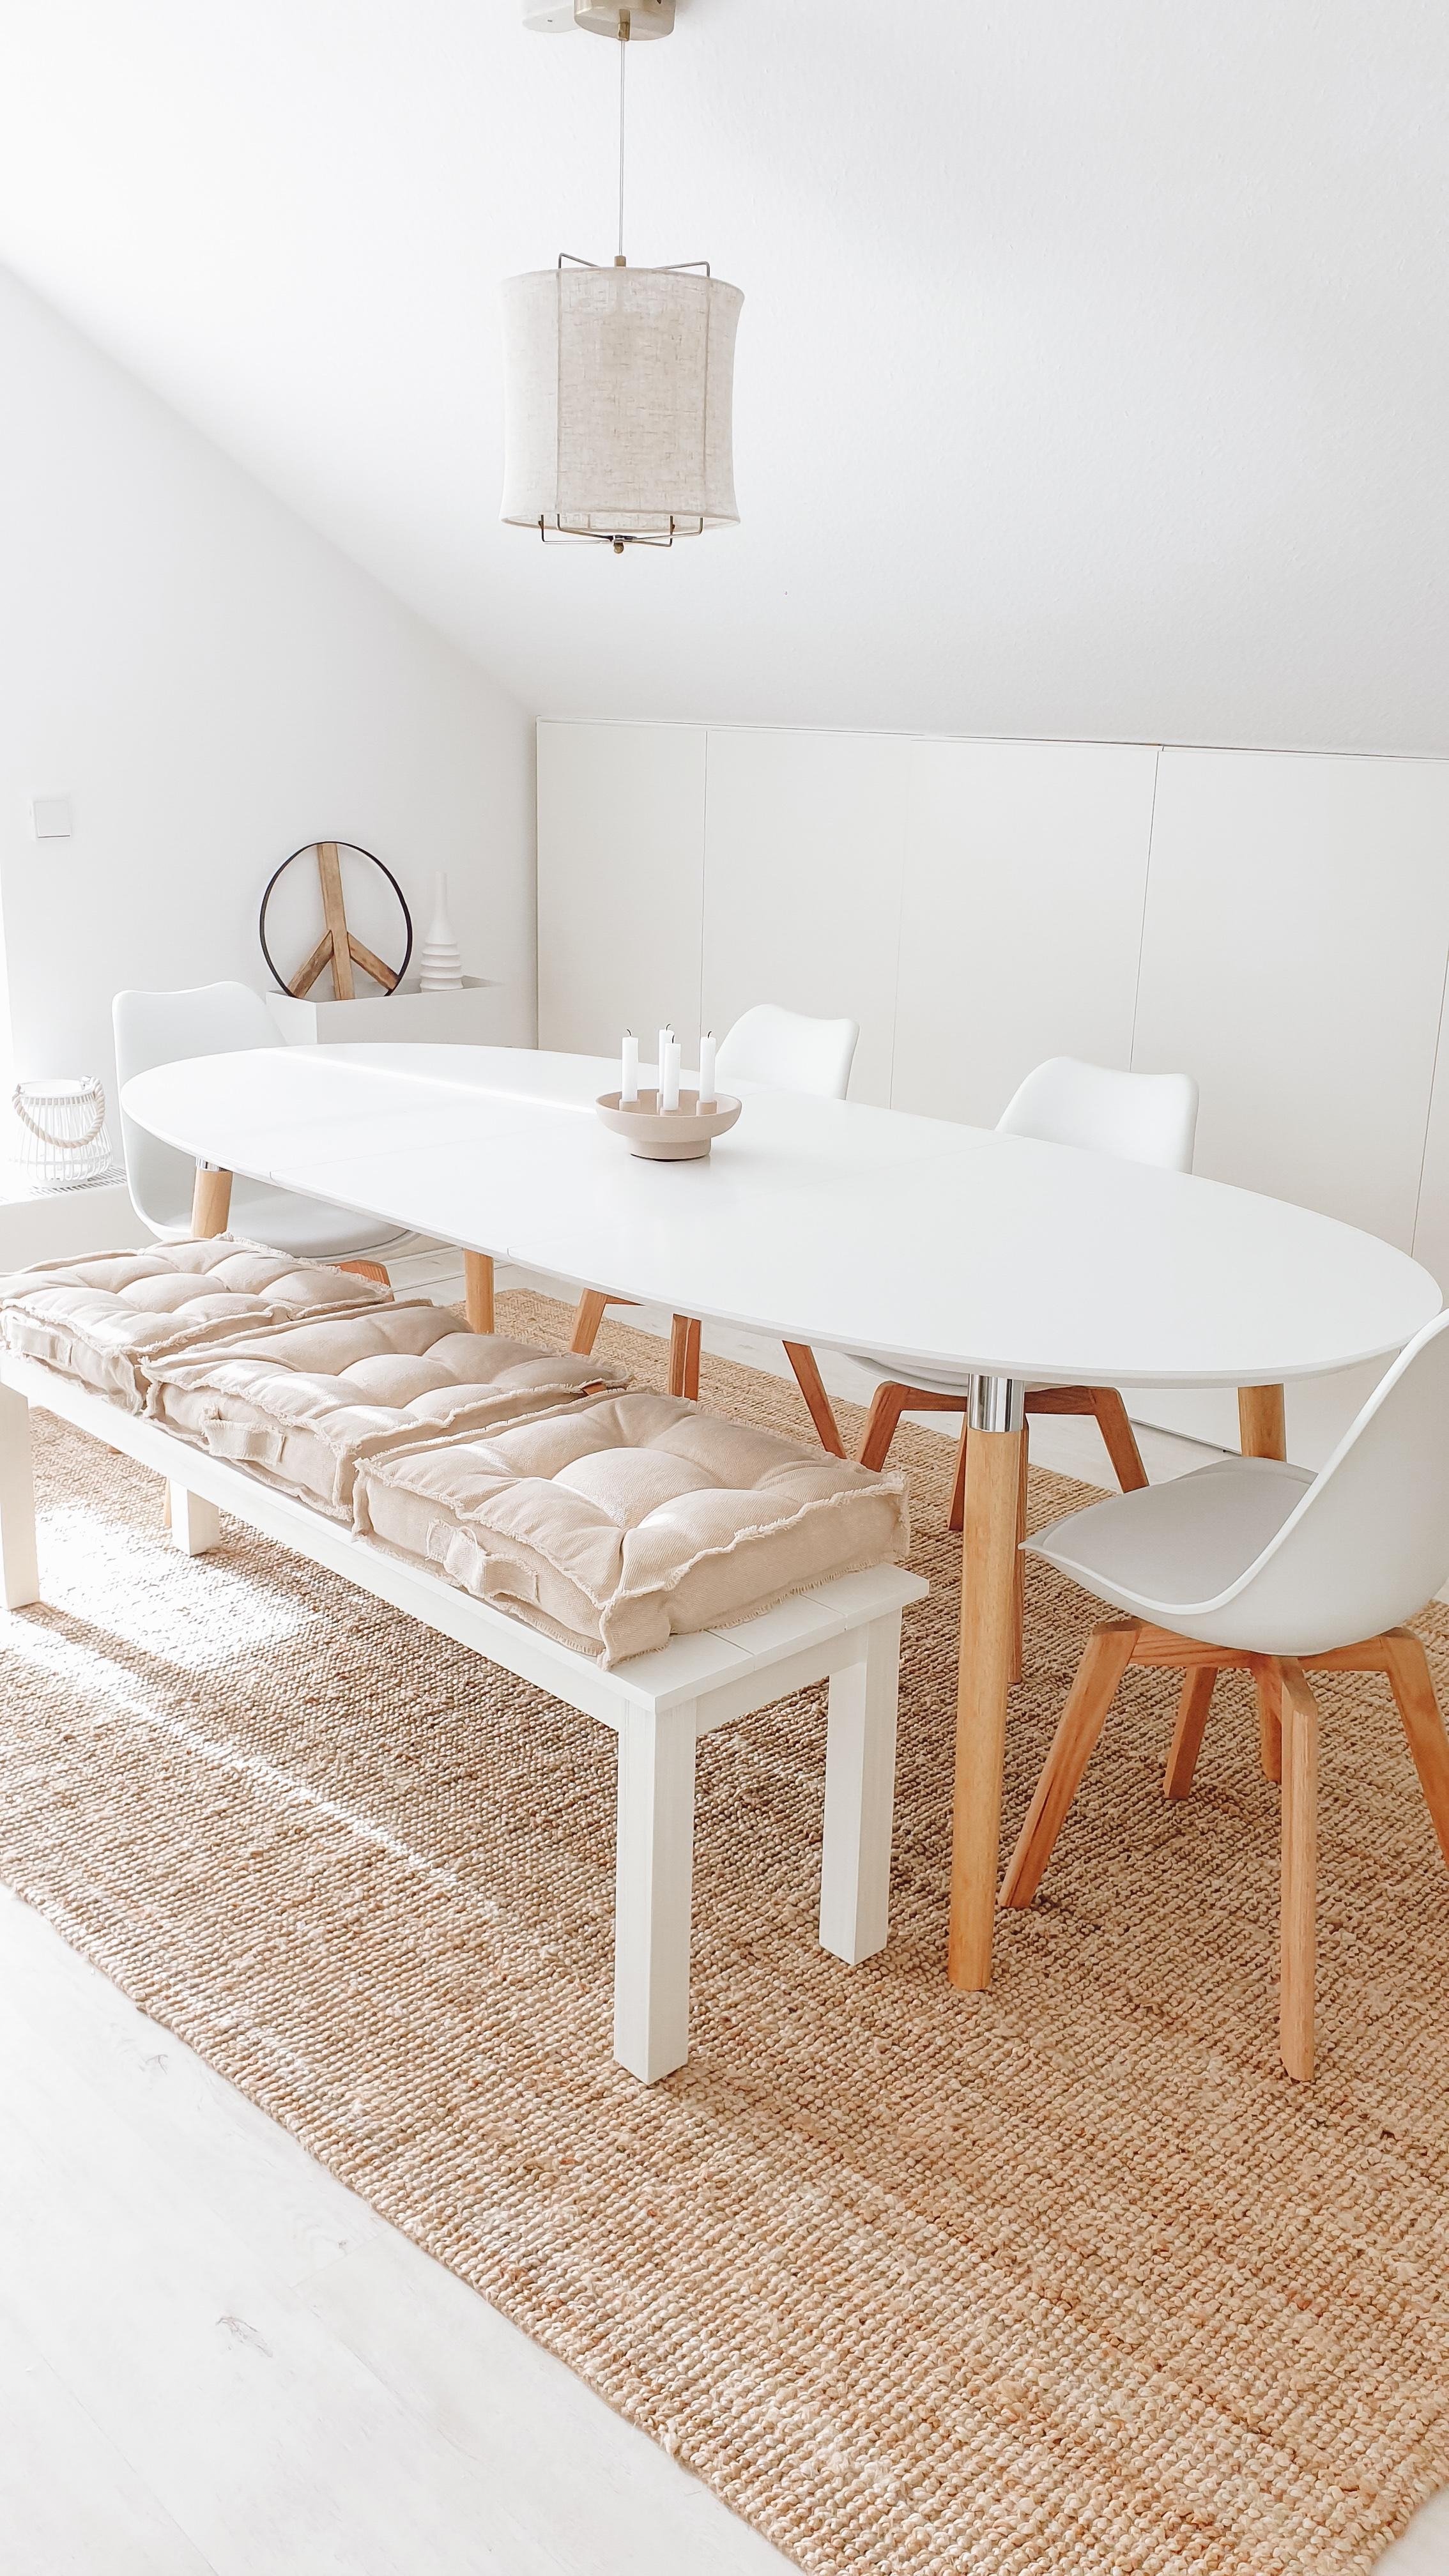 Unser neuer Esstisch ist da 😍
weiß, oval und ausziehbar. Ich bin verliebt 😍
#esstisch #wohnzimmer #livingroom
#Skandi 